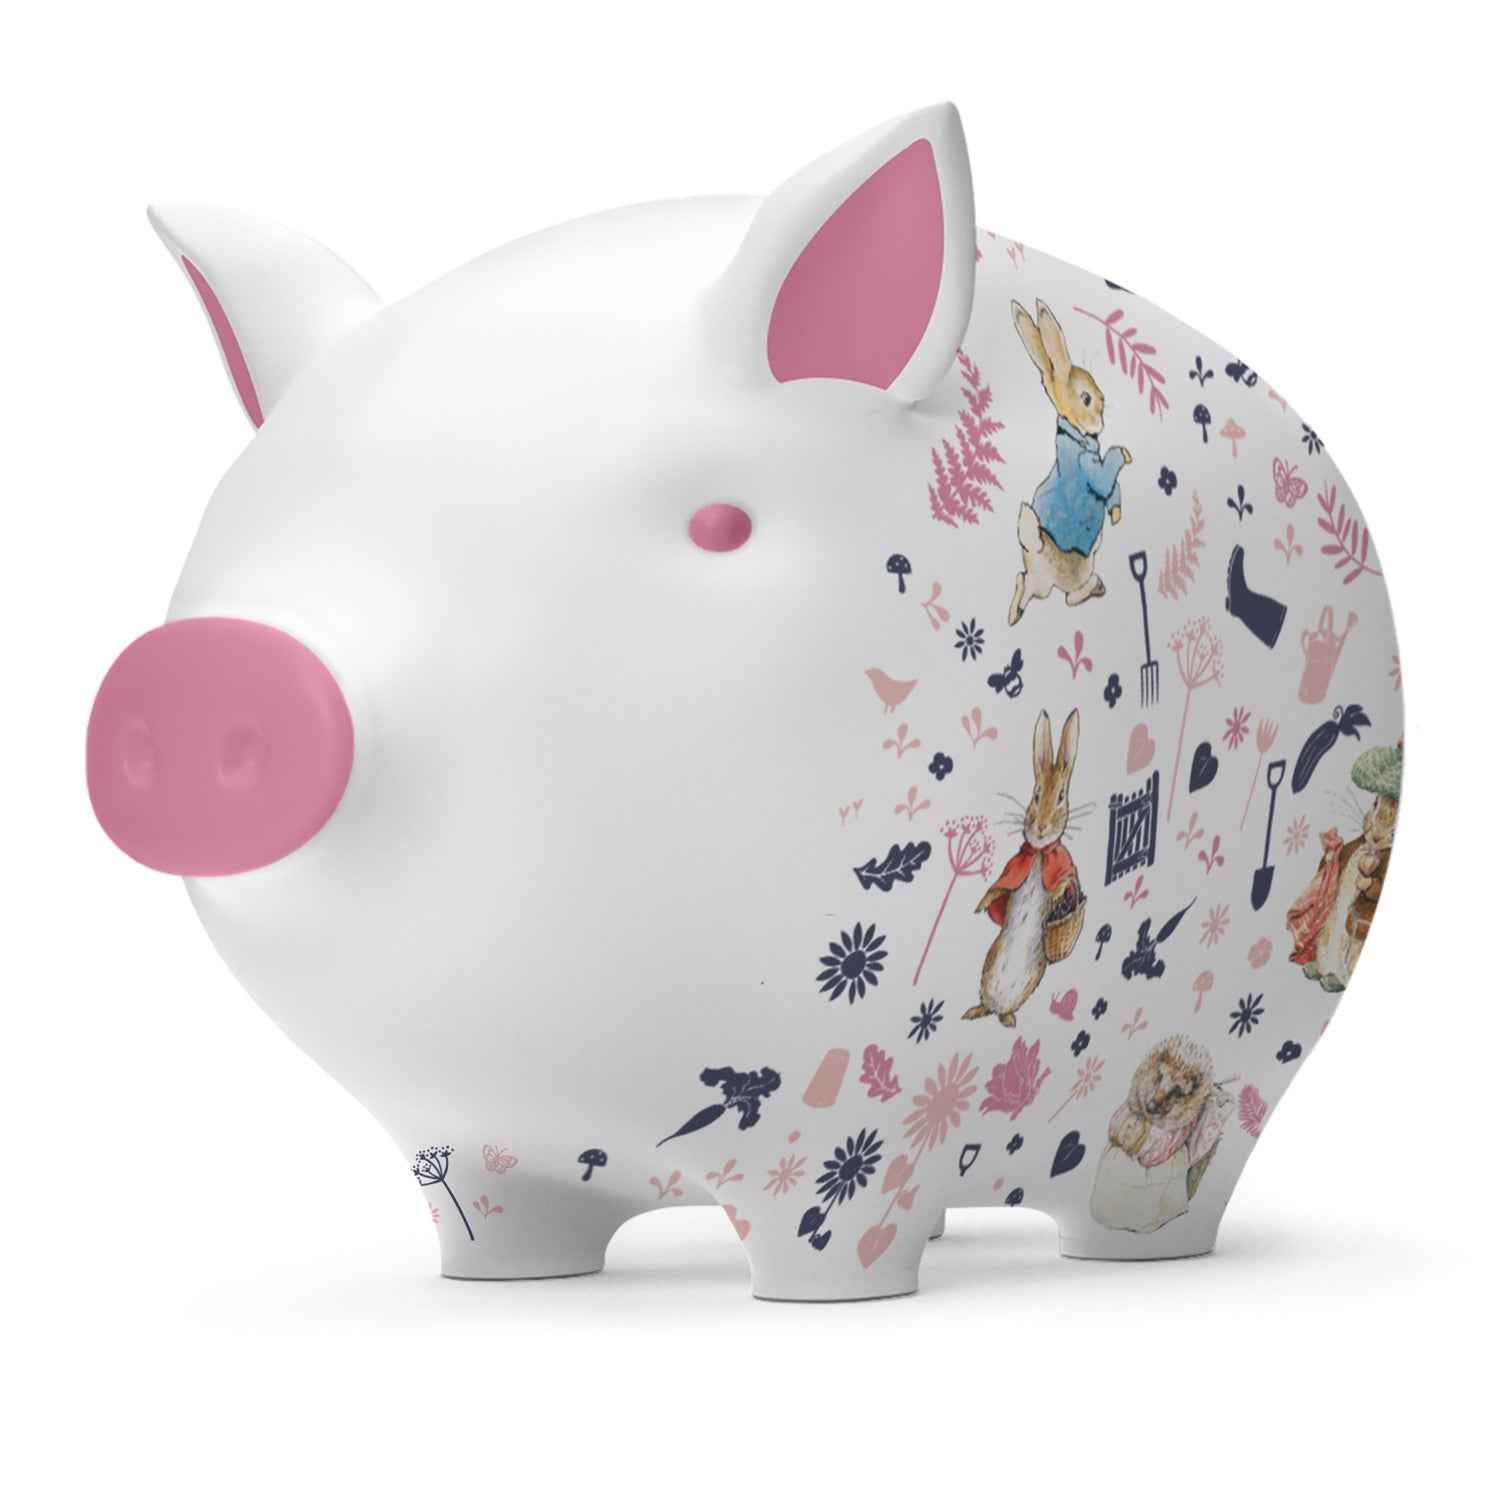 Pink Peter Rabbit Piggy bank